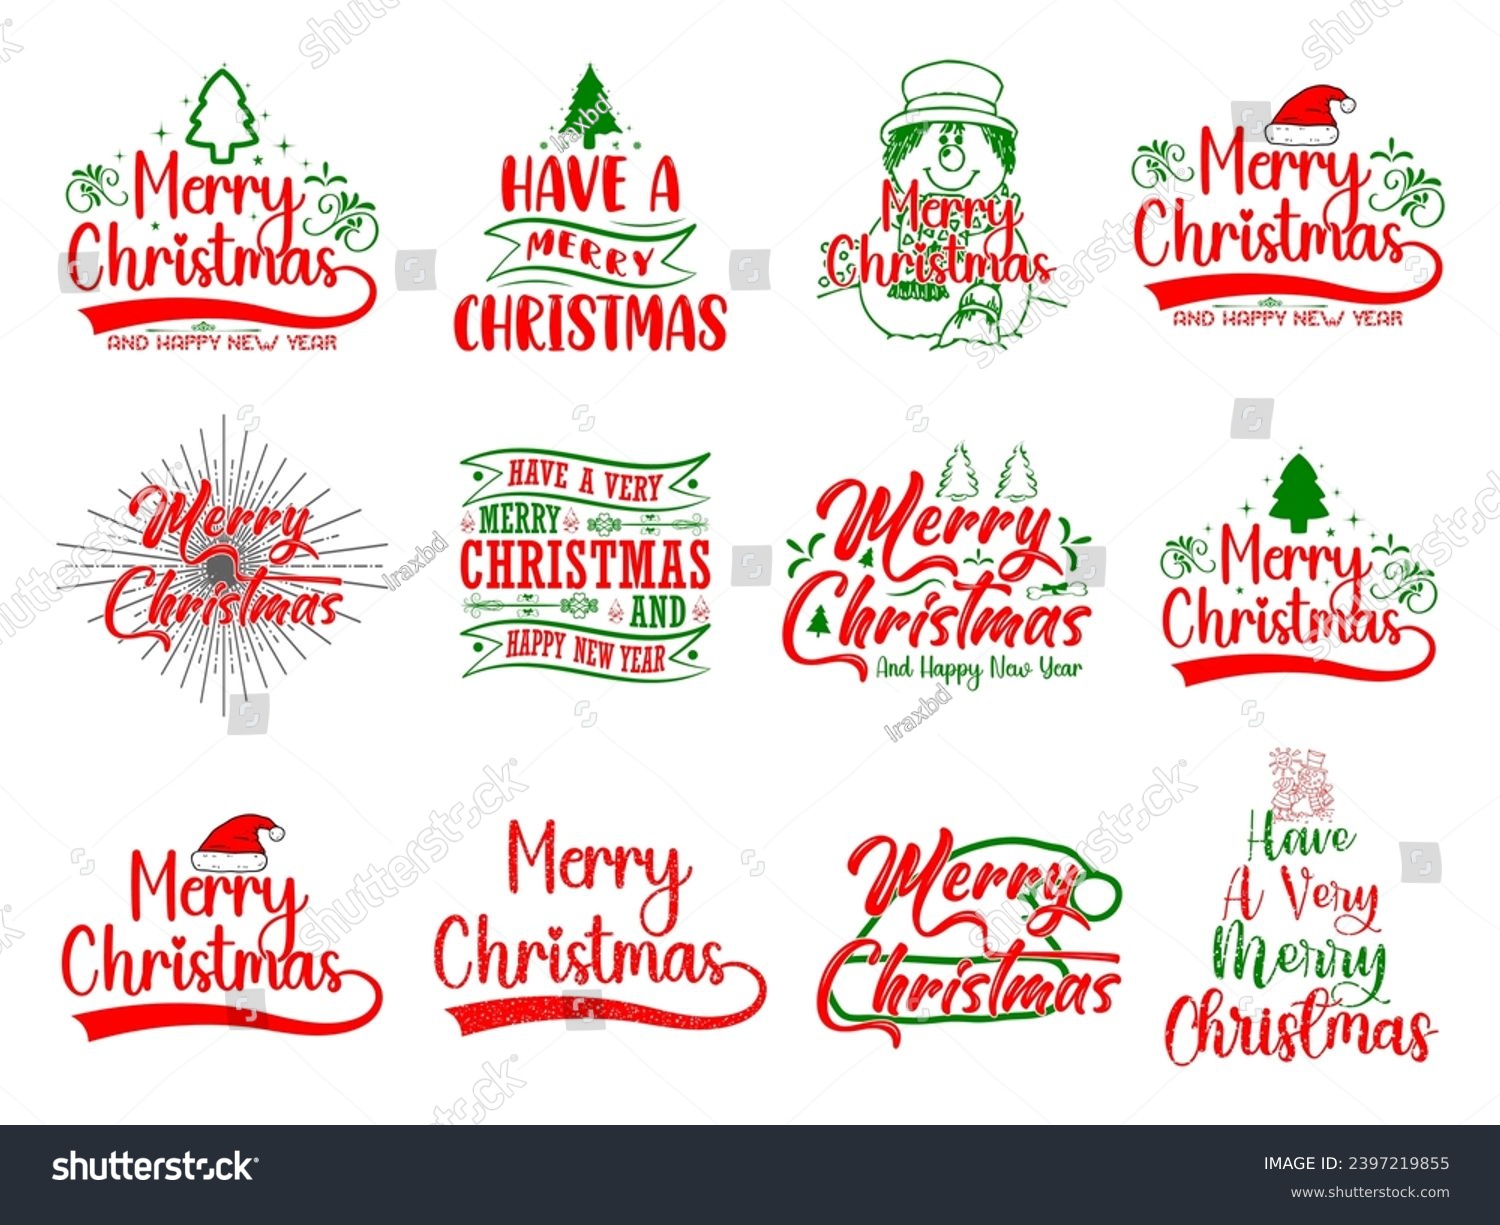 SVG of Christmas t shirt design bundle, Christmas bundle, Christmas calligraphy quotes collection, Happy new year, New year quotes, Christmas tshirt for family, svg